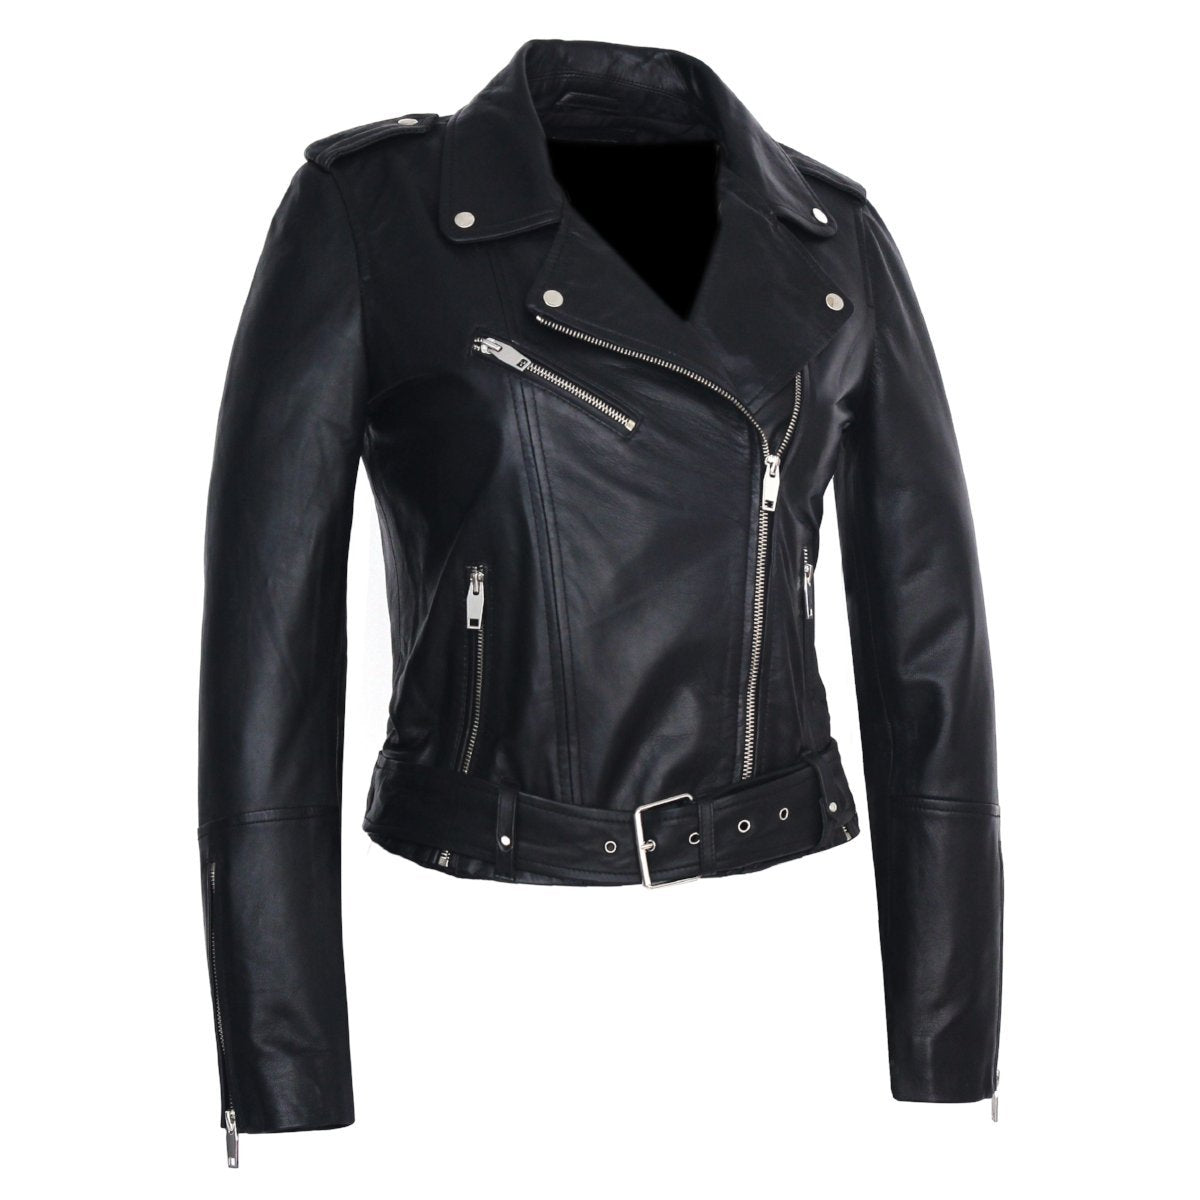 Women's Moto Nappa Leather Jacket (XS-4XL)